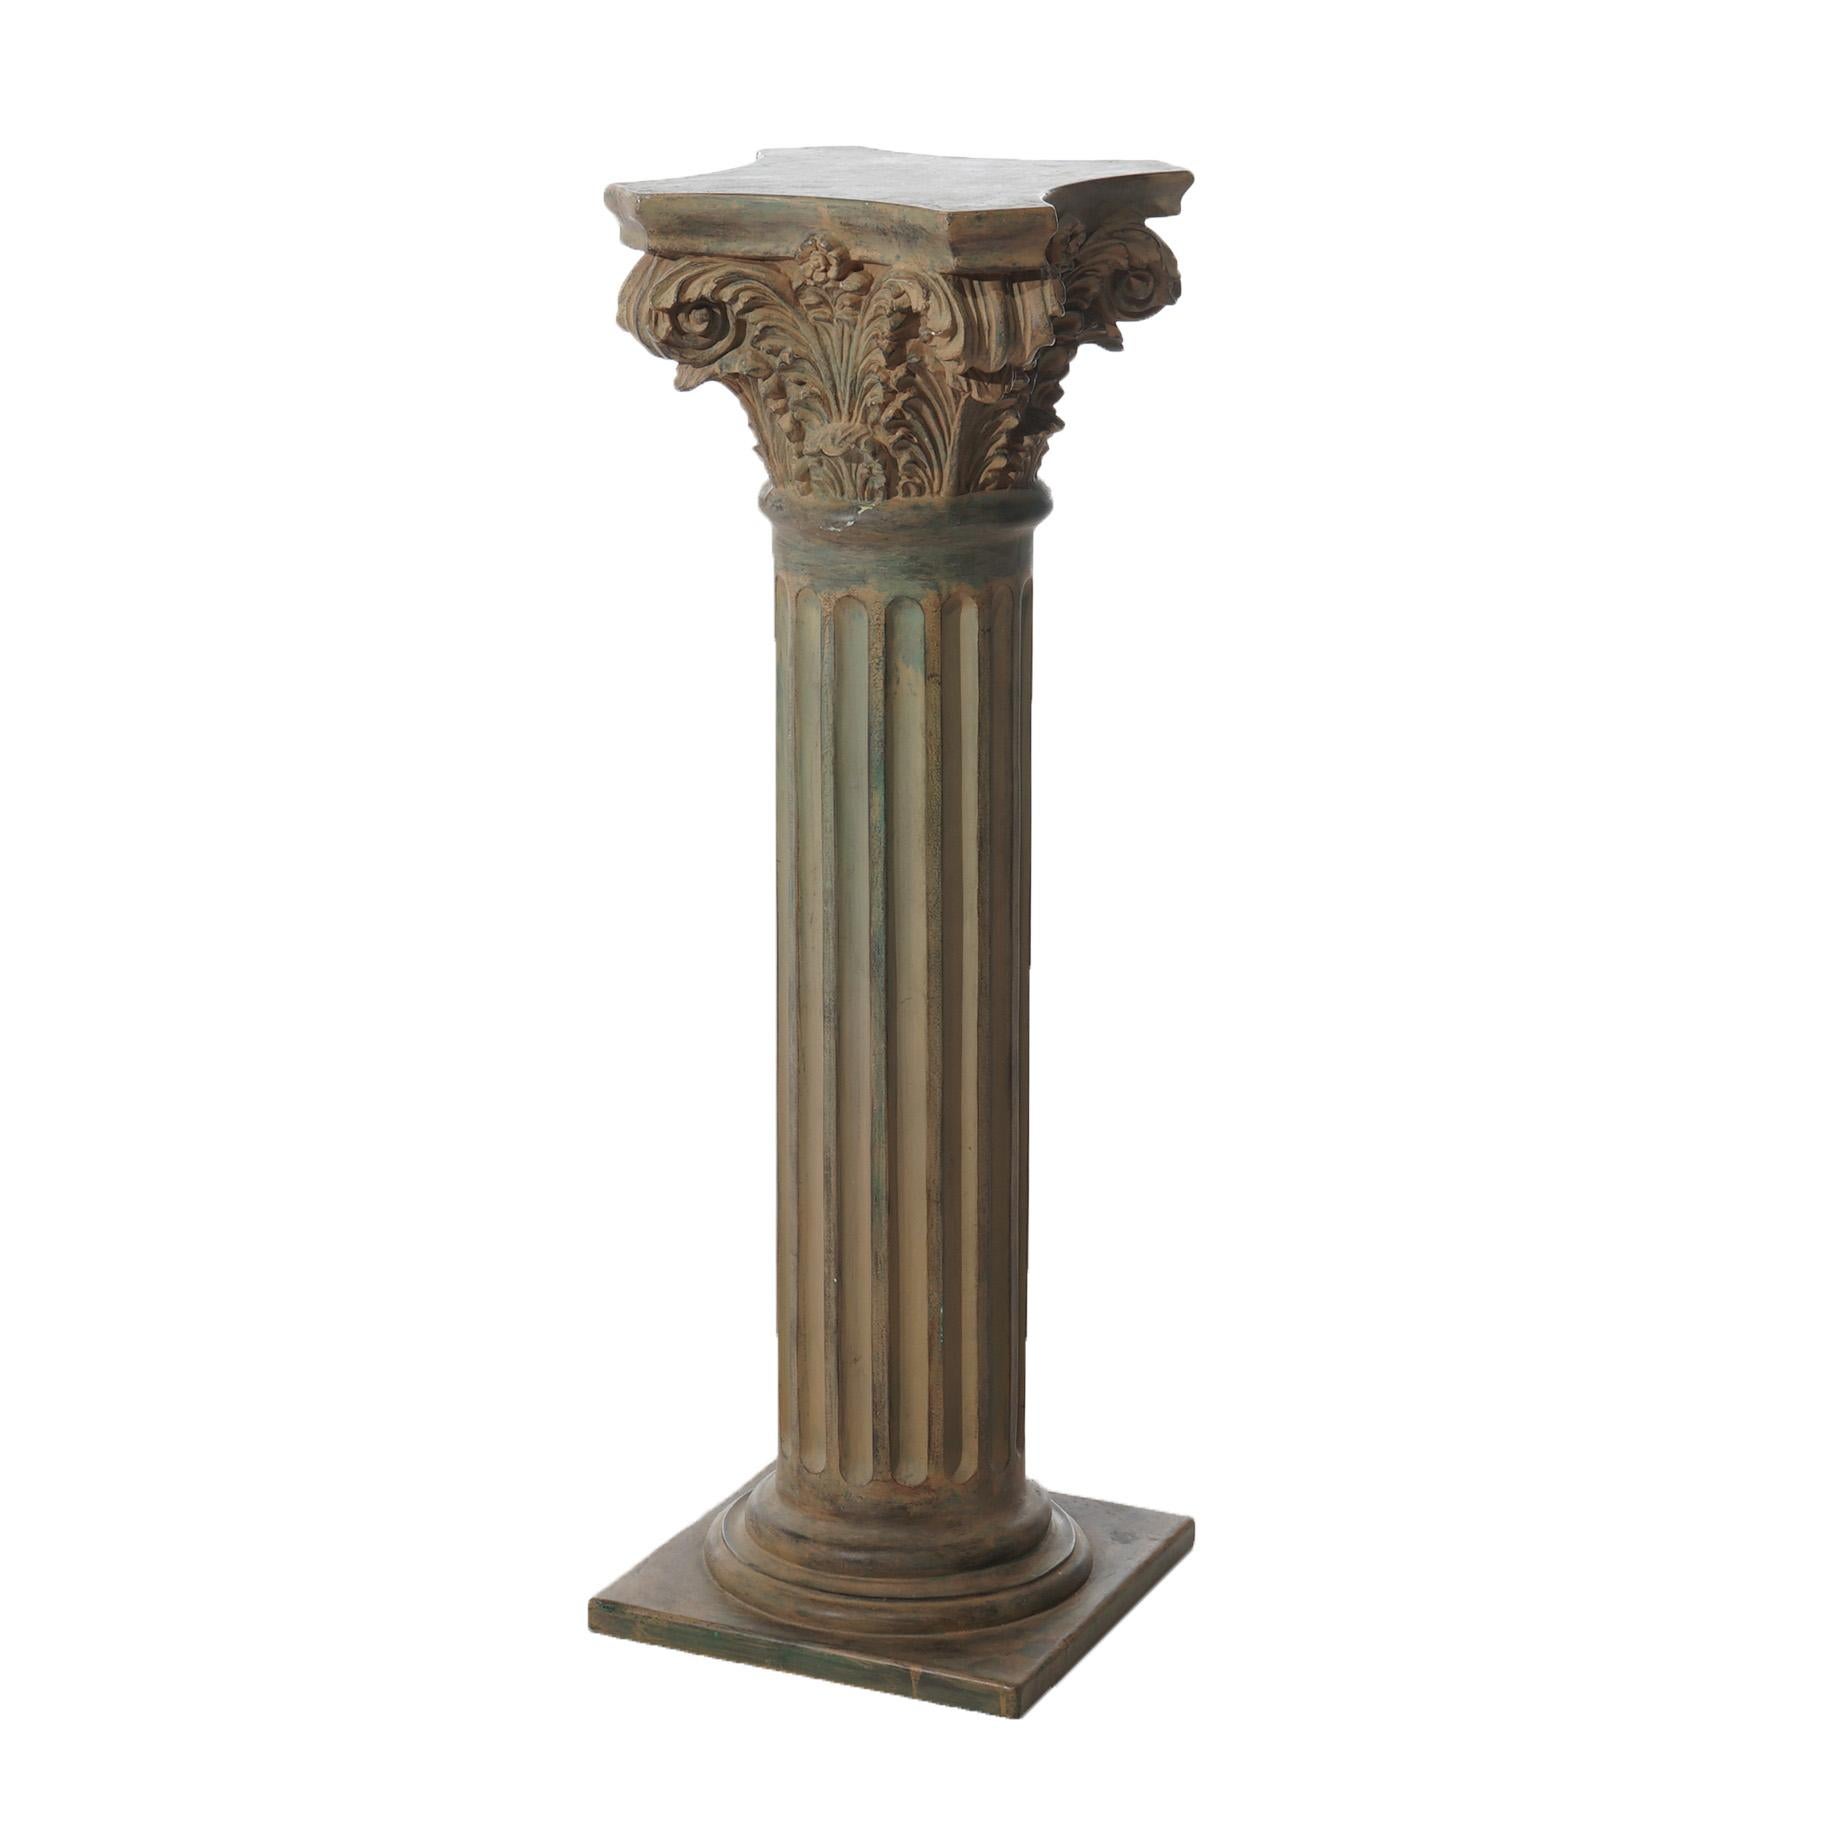 Composition Pair Neoclassical Corinthian Column Form Composite Sculpture Pedestals 20thC For Sale